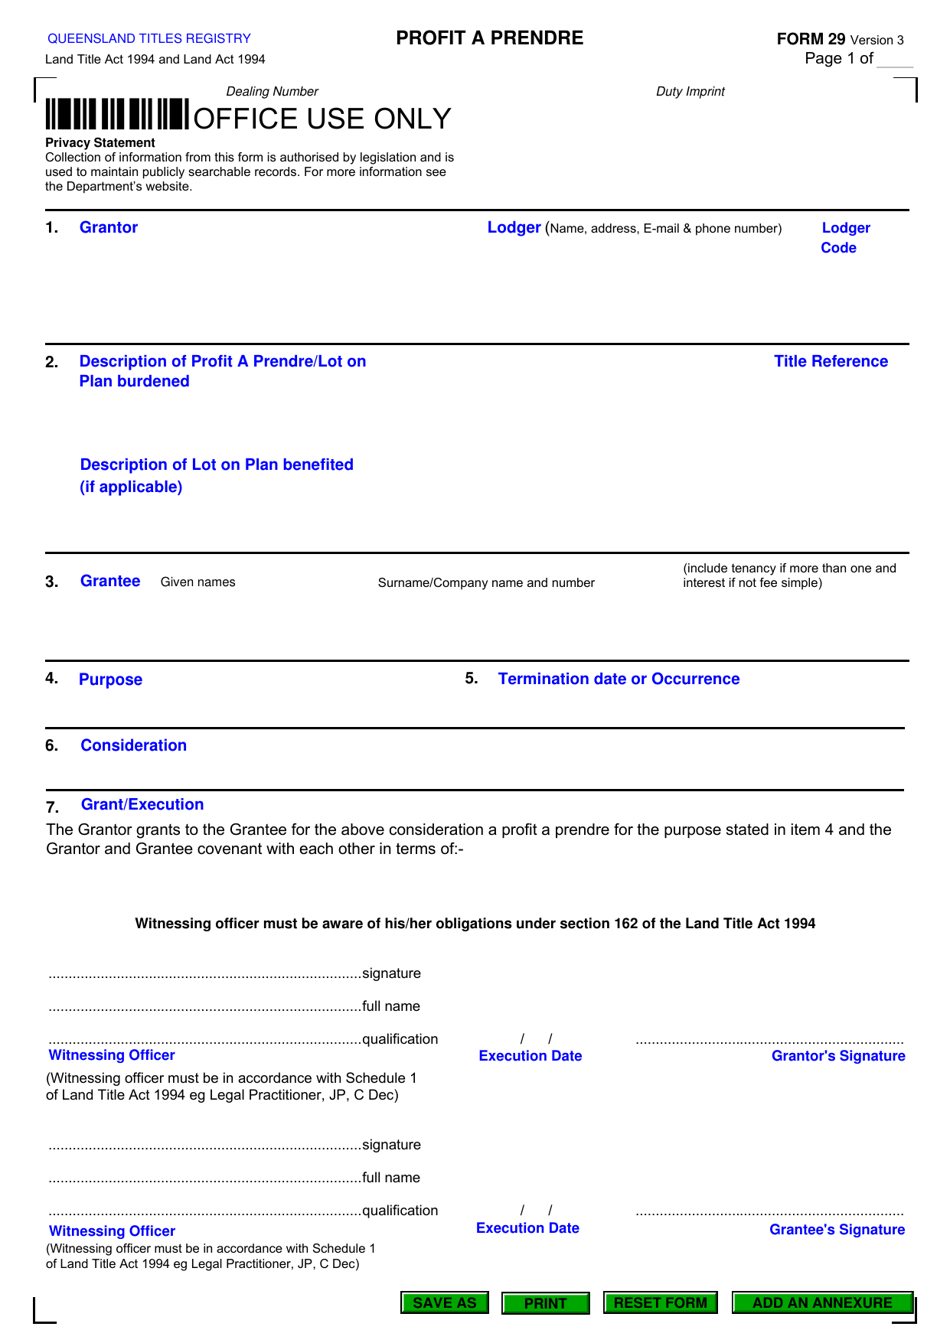 Form 29 Profit a Prendre - Queensland, Australia, Page 1